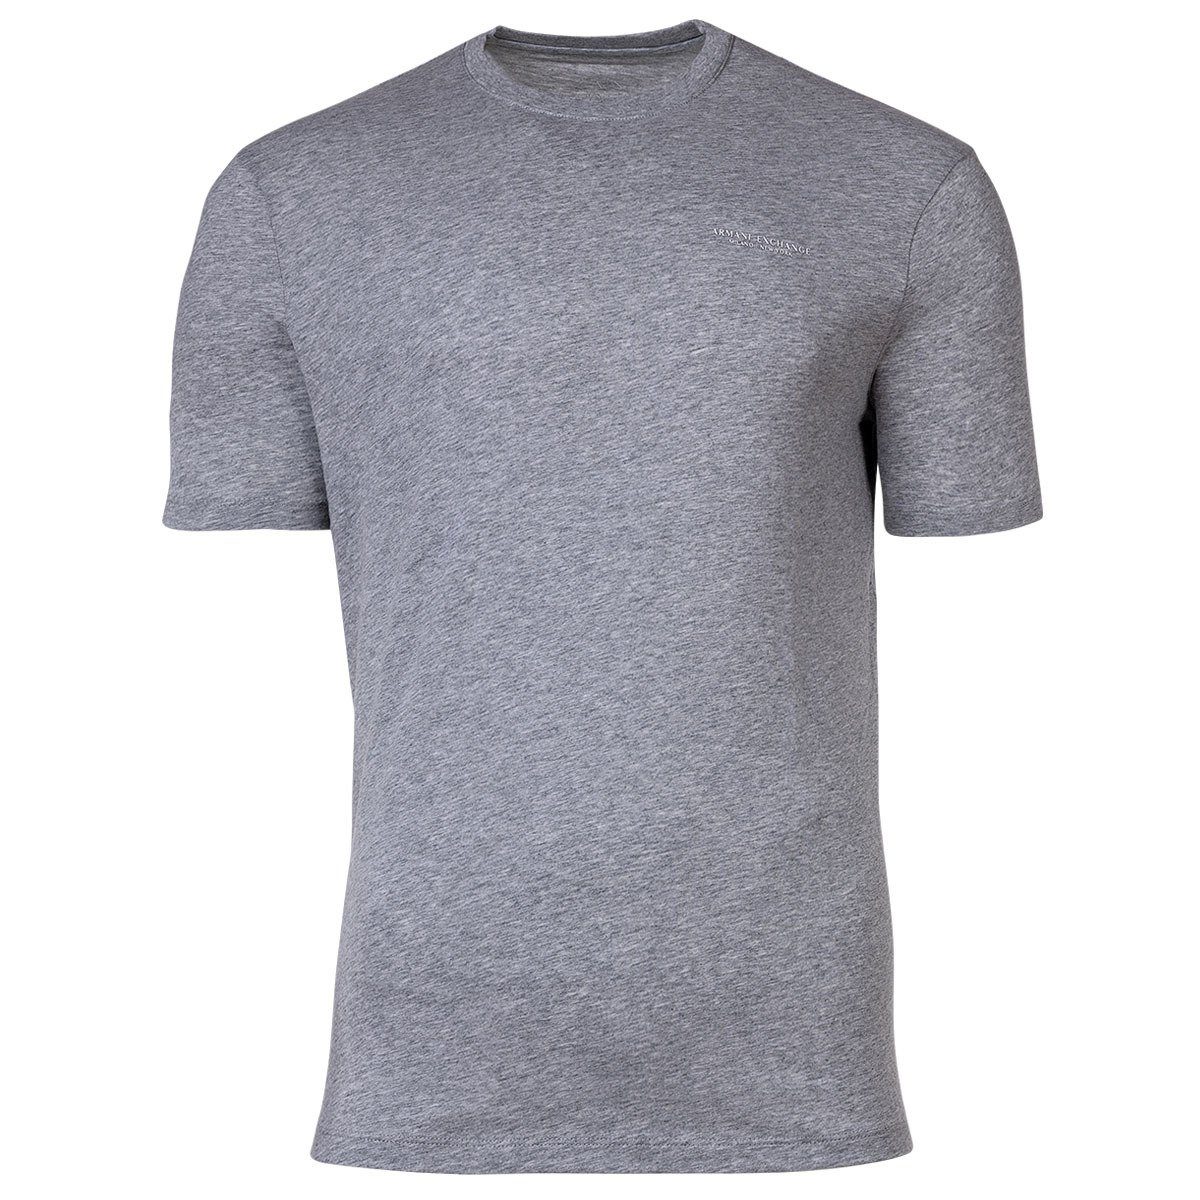 Grau Rundhals, Cotton T-Shirt ARMANI Herren T-Shirt - Logoschriftzug, EXCHANGE